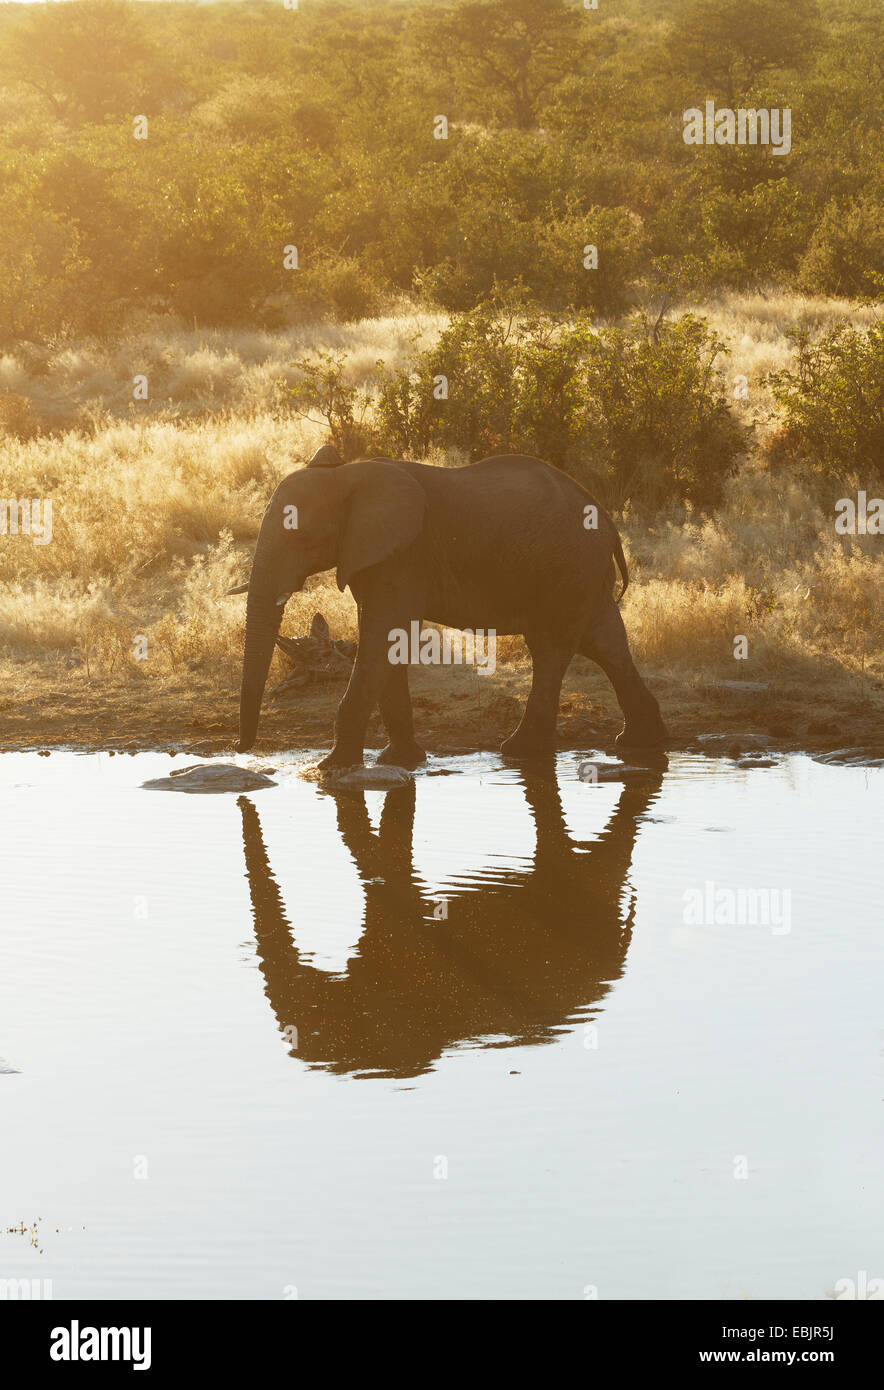 African elephant drinking at waterhole, Etosha National Park, Namibia Stock Photo